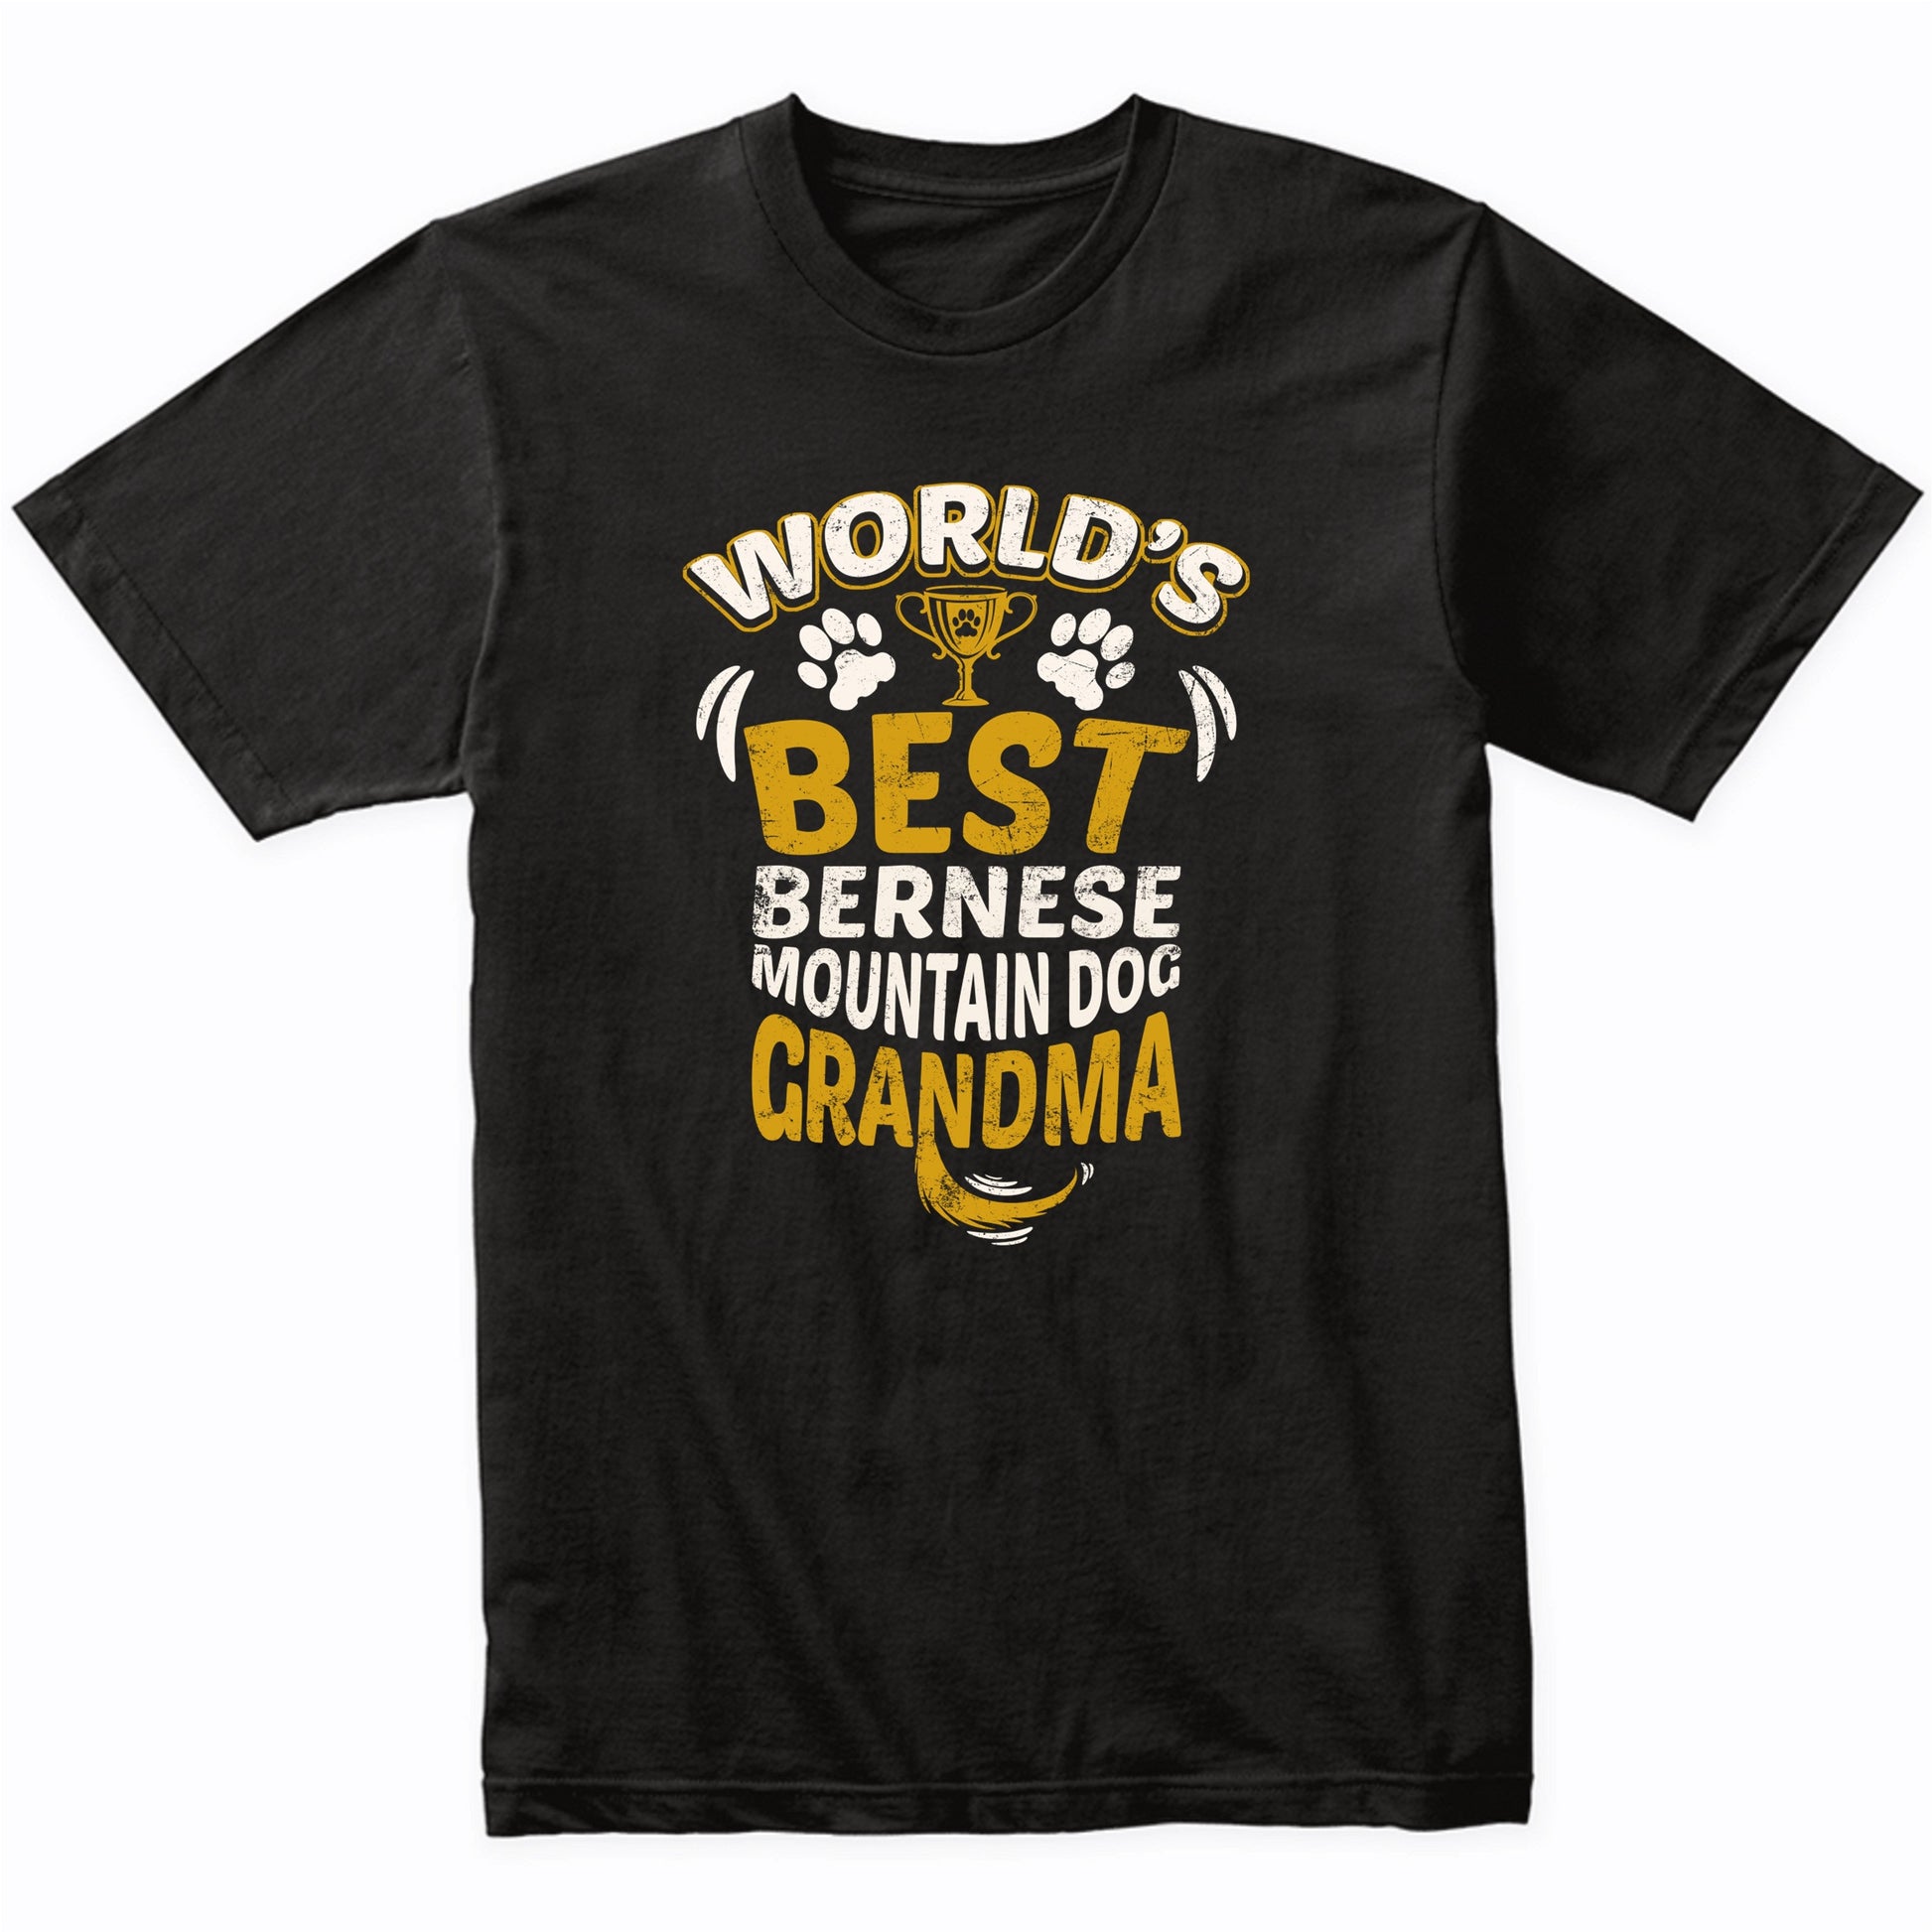 World's Best Bernese Mountain Dog Grandma Graphic T-Shirt